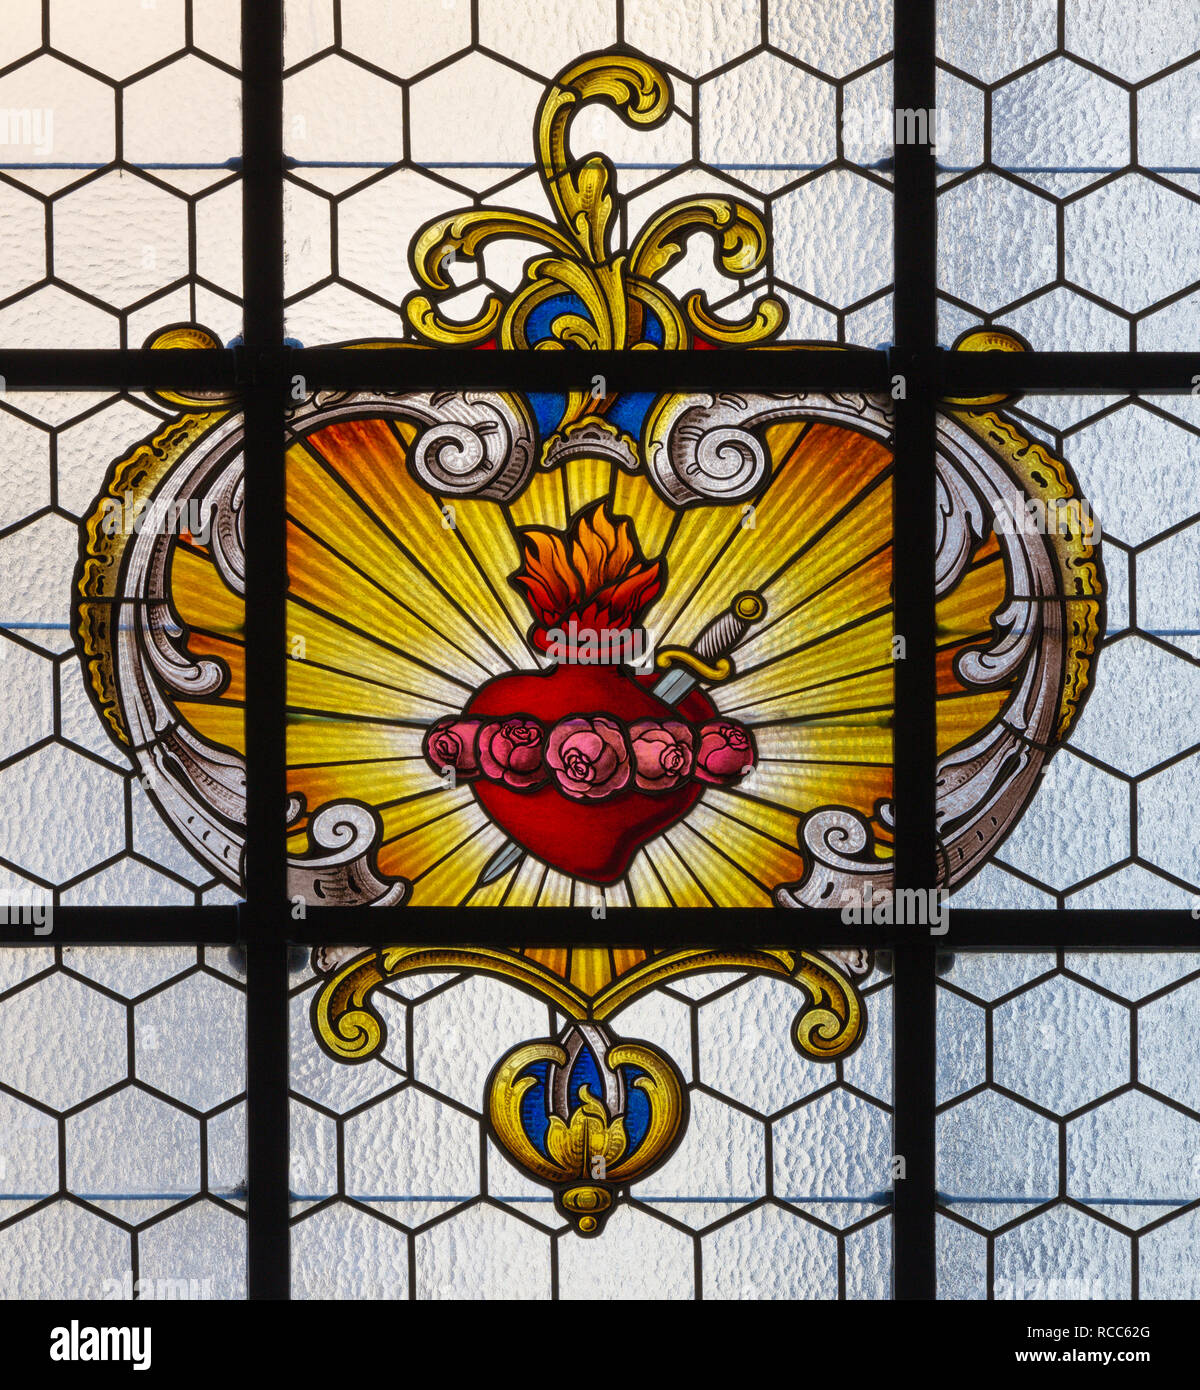 Prag, tschechische Republik - 16. Oktober 2018: Im barocken Herzen der Jungfrau Maria in der Glasfenster in der Kirche Kostel Svatého Havla Stockfoto